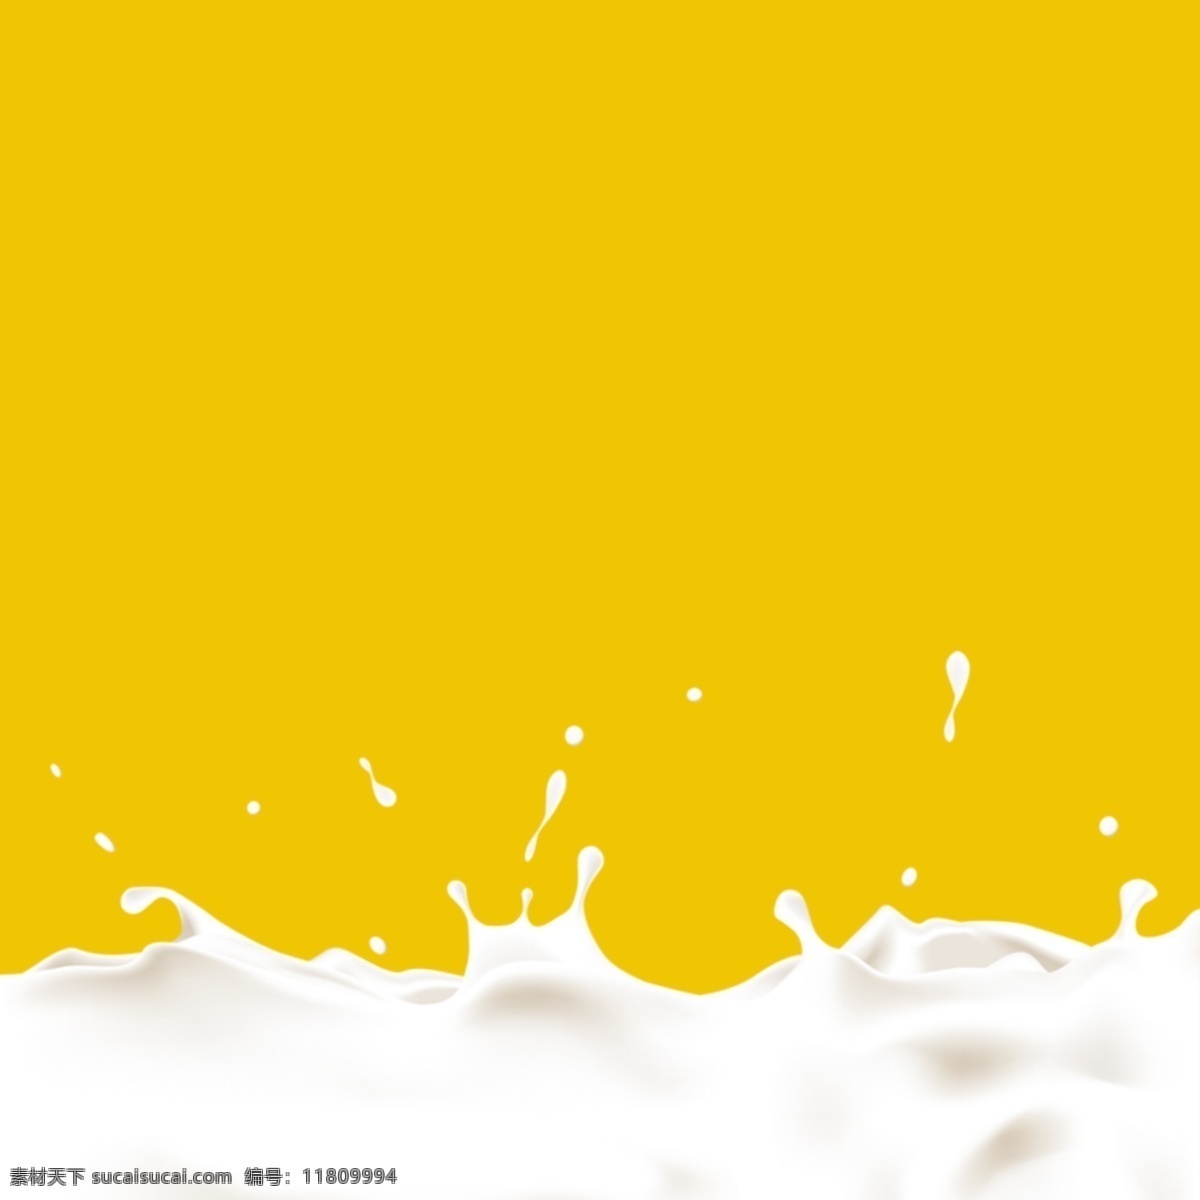 牛奶主图背景 天猫 淘宝 主图背景 牛奶 背景素材 主图素材 黄色